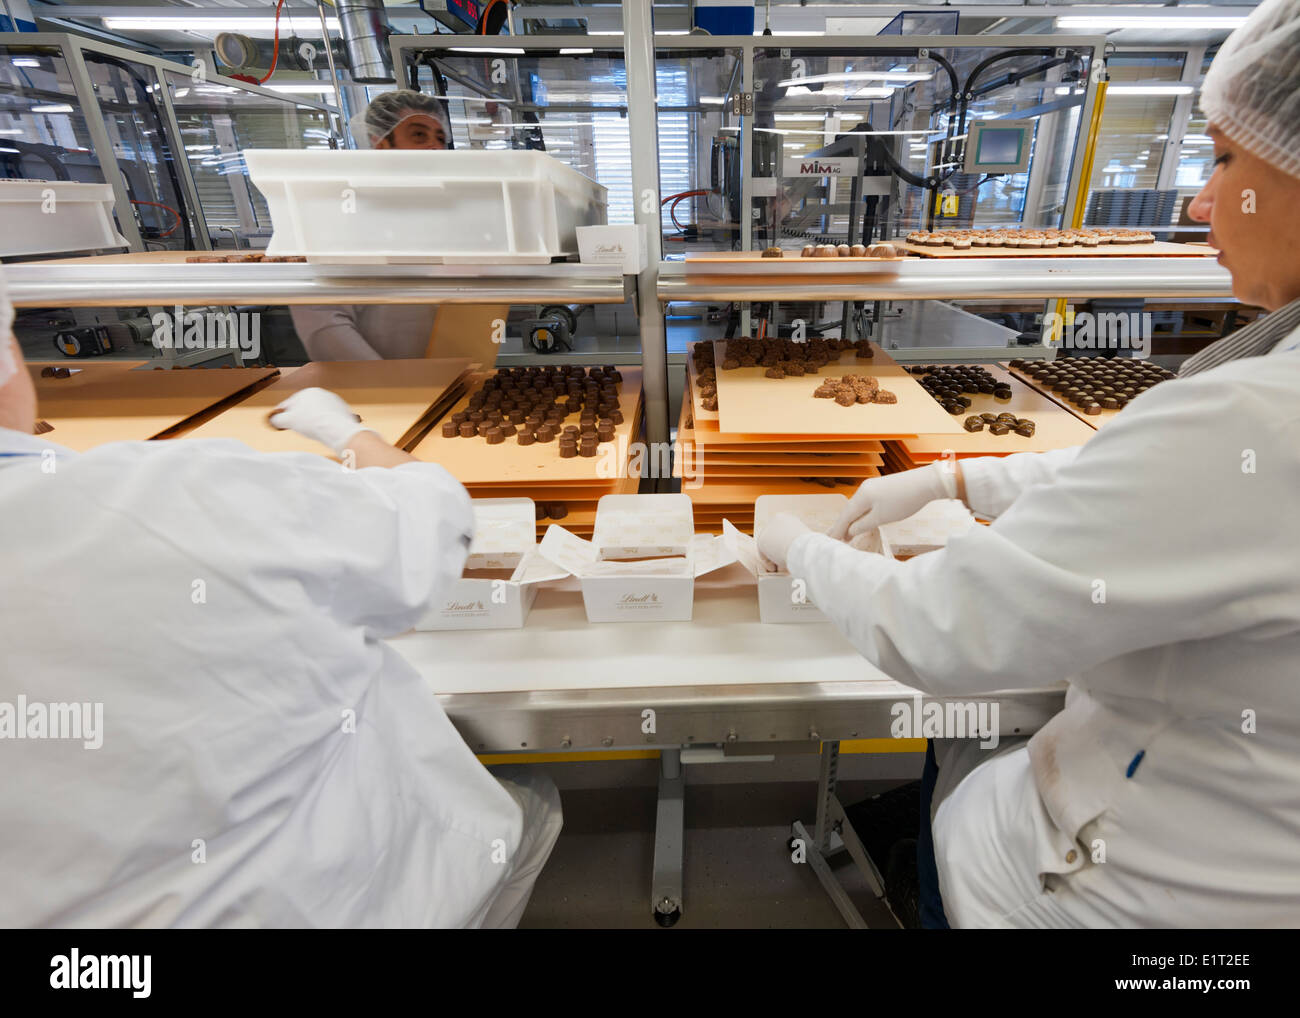 Les travailleurs de l'usine de chocolat suisse Lindt & Spruengli à Zurich / Kilchberg sont de triage et d'emballage de bonbons au chocolat. Banque D'Images